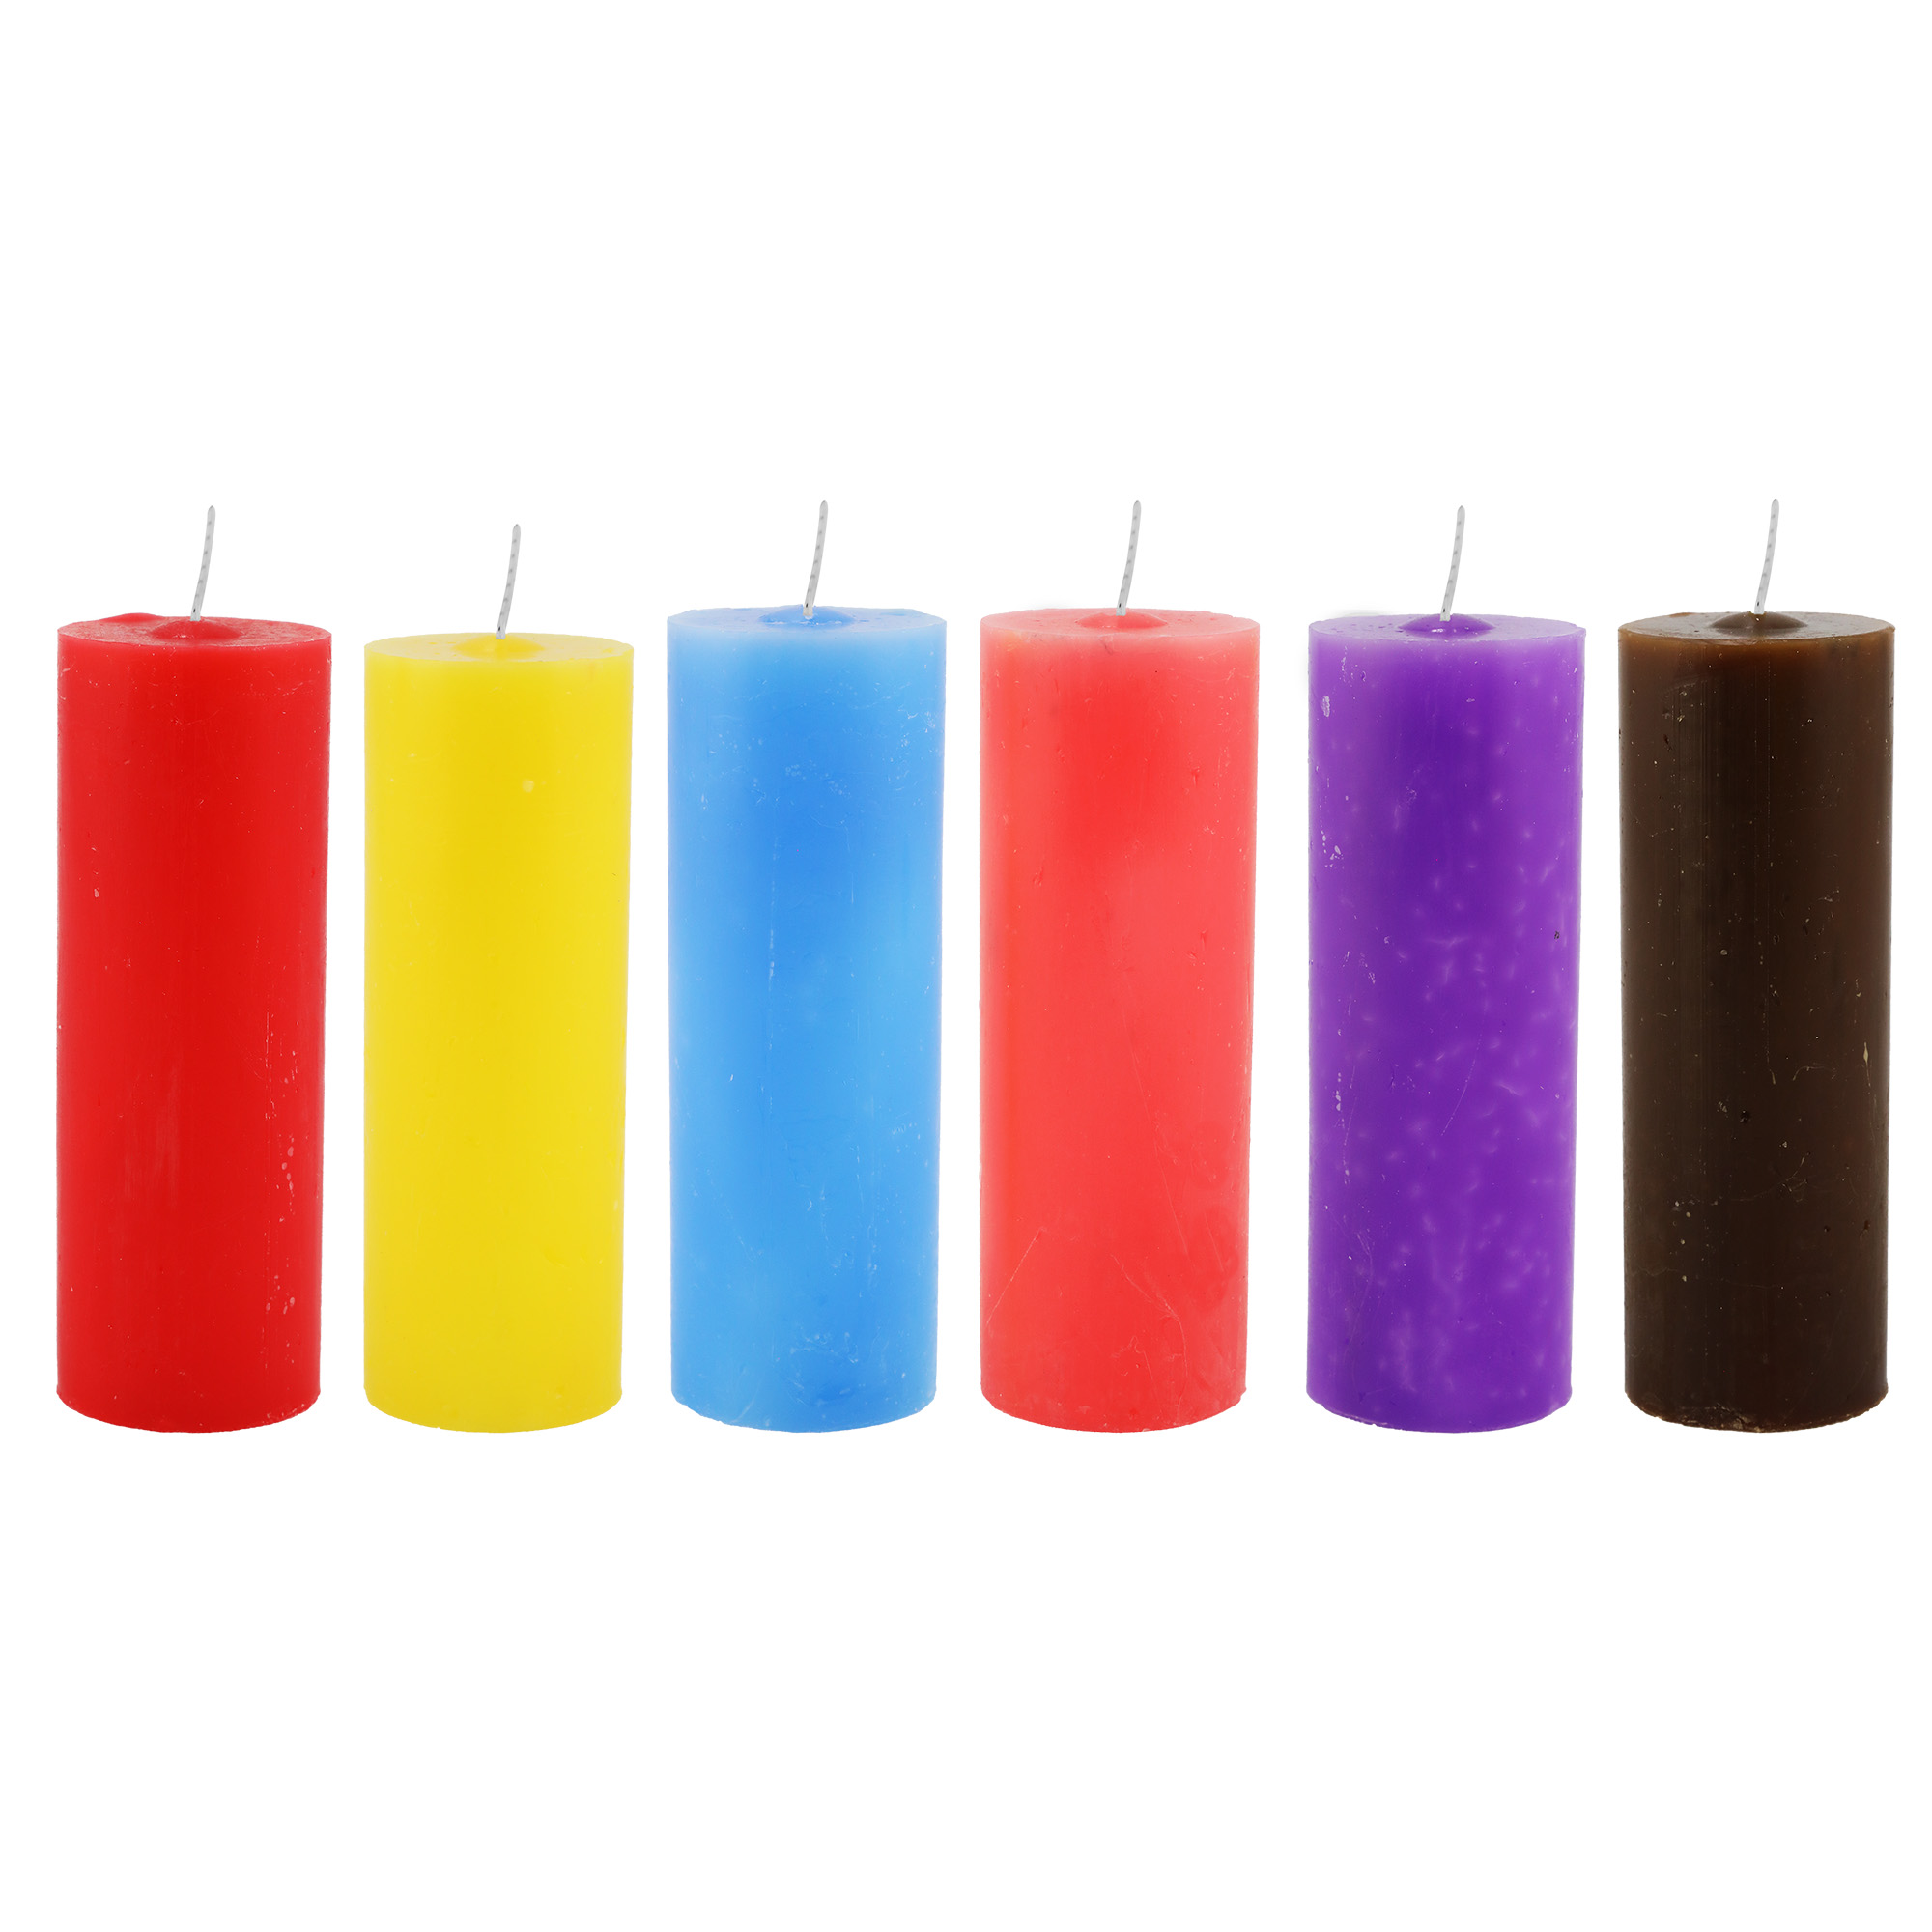 72 velas votivas 250 g ( cores a escolher)